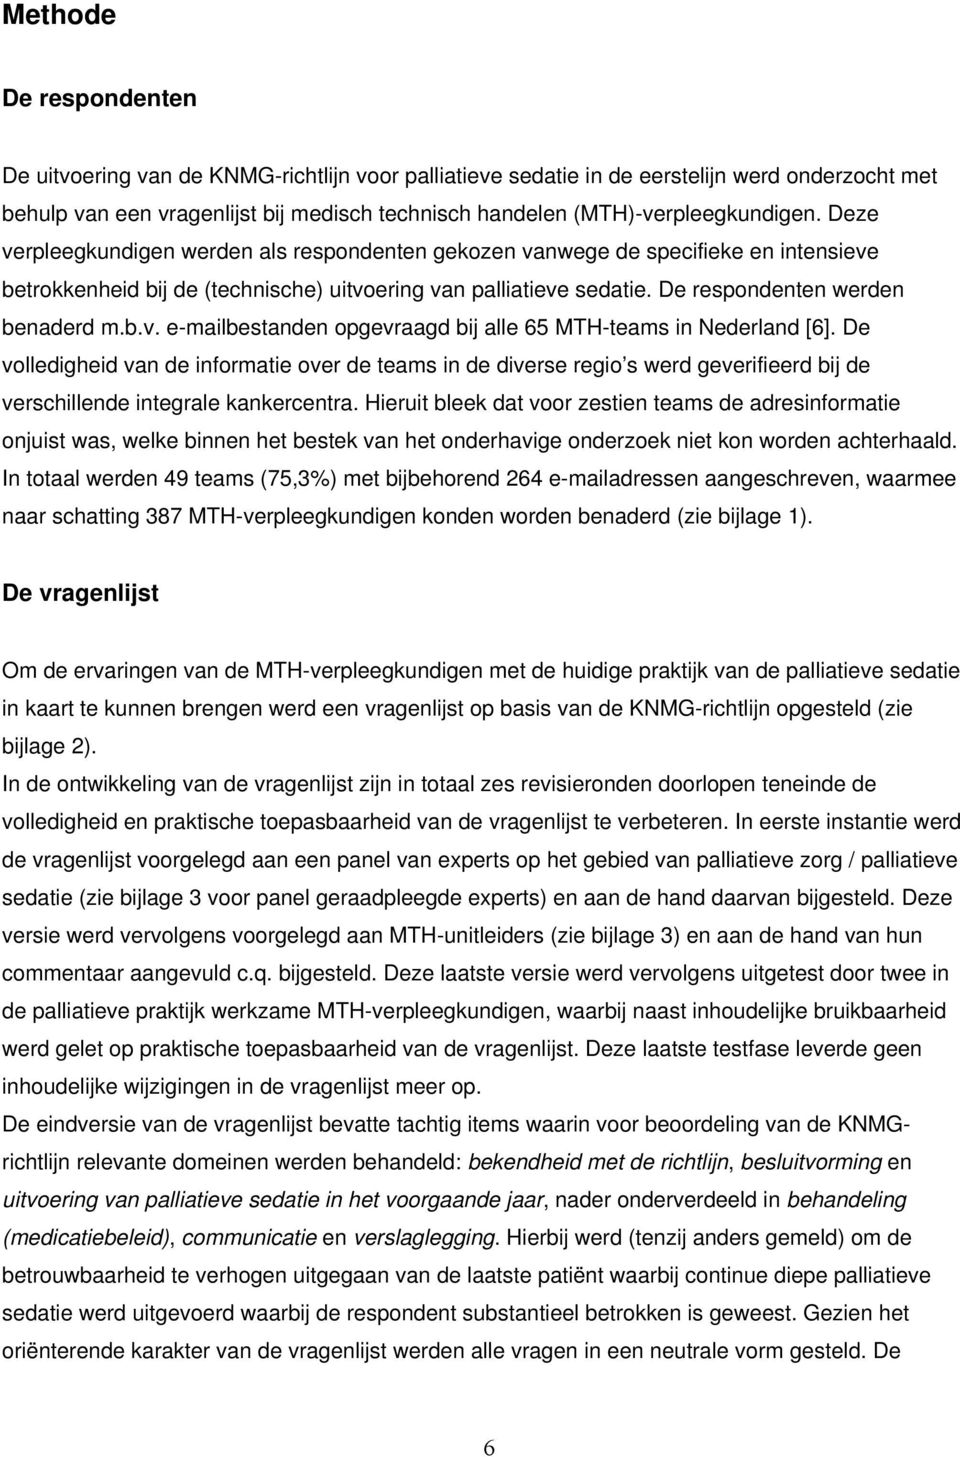 De respondenten werden benaderd m.b.v. e-mailbestanden opgevraagd bij alle 65 MTH-teams in Nederland [6].